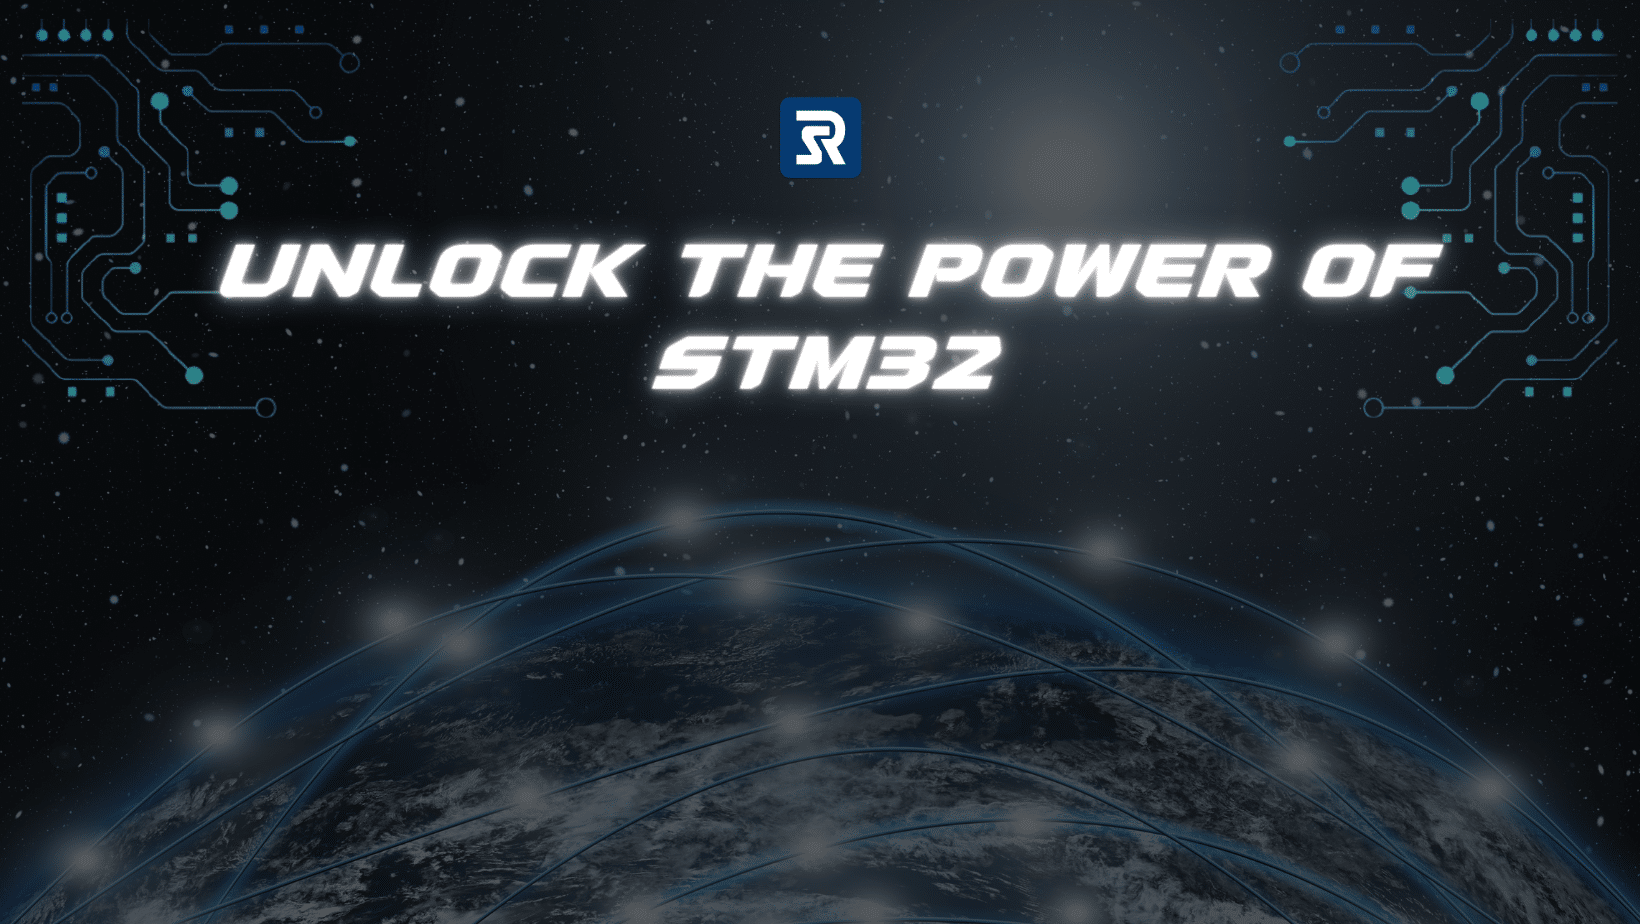 débloquez la puissance de stm32